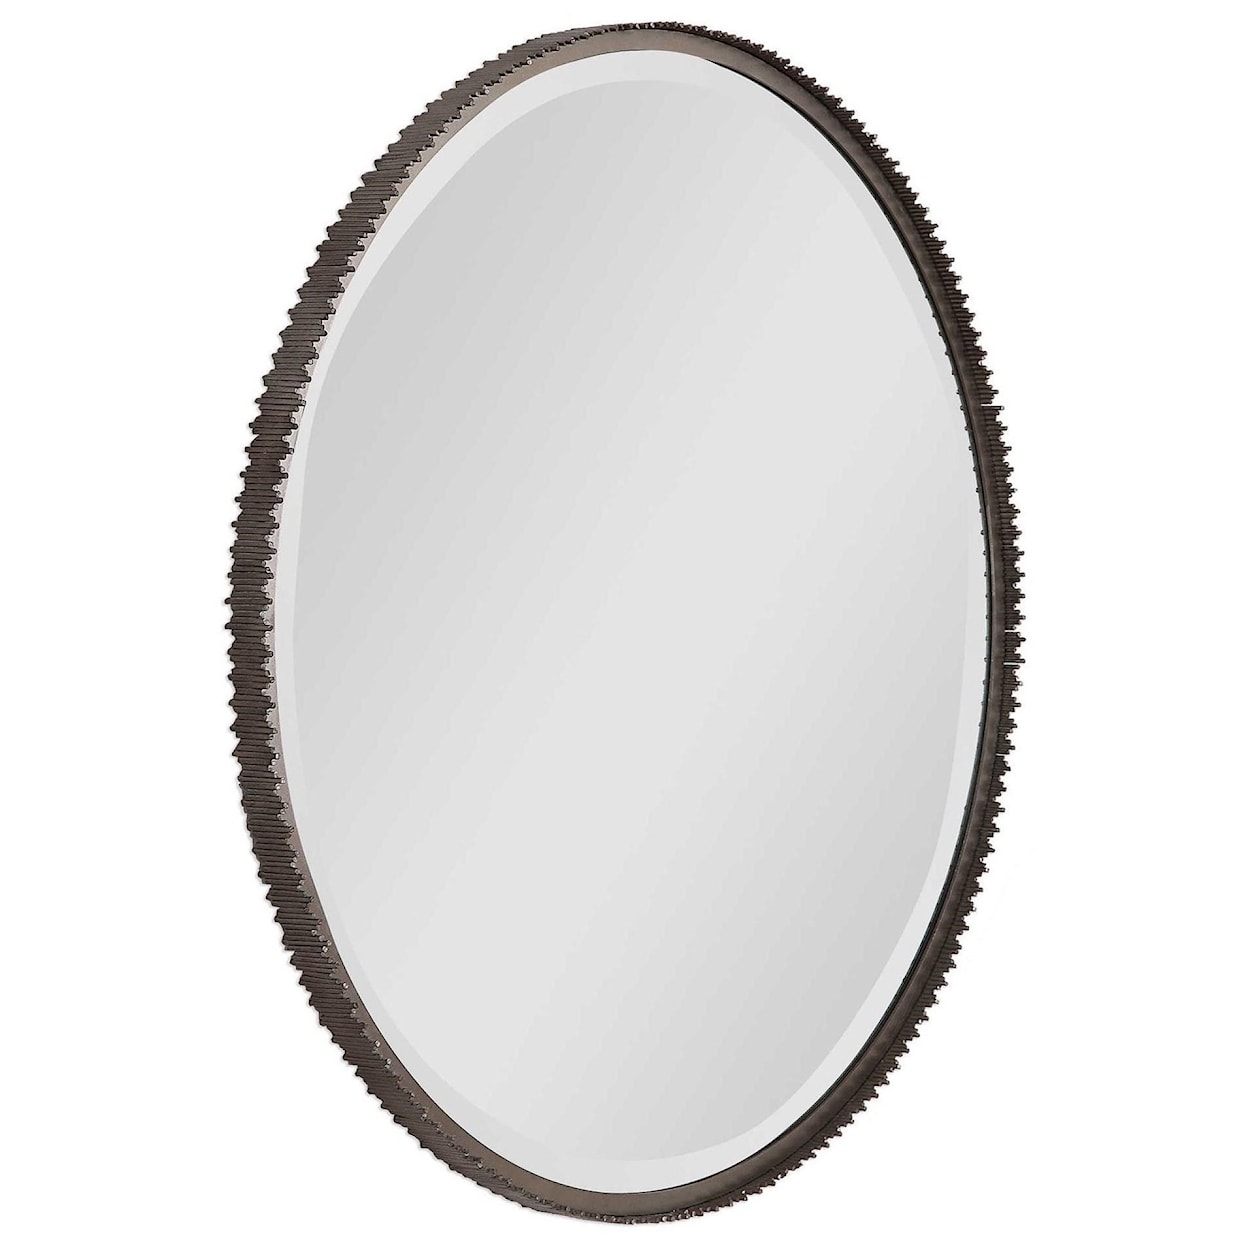 Uttermost Mirrors - Round Ada Round Steel Mirror